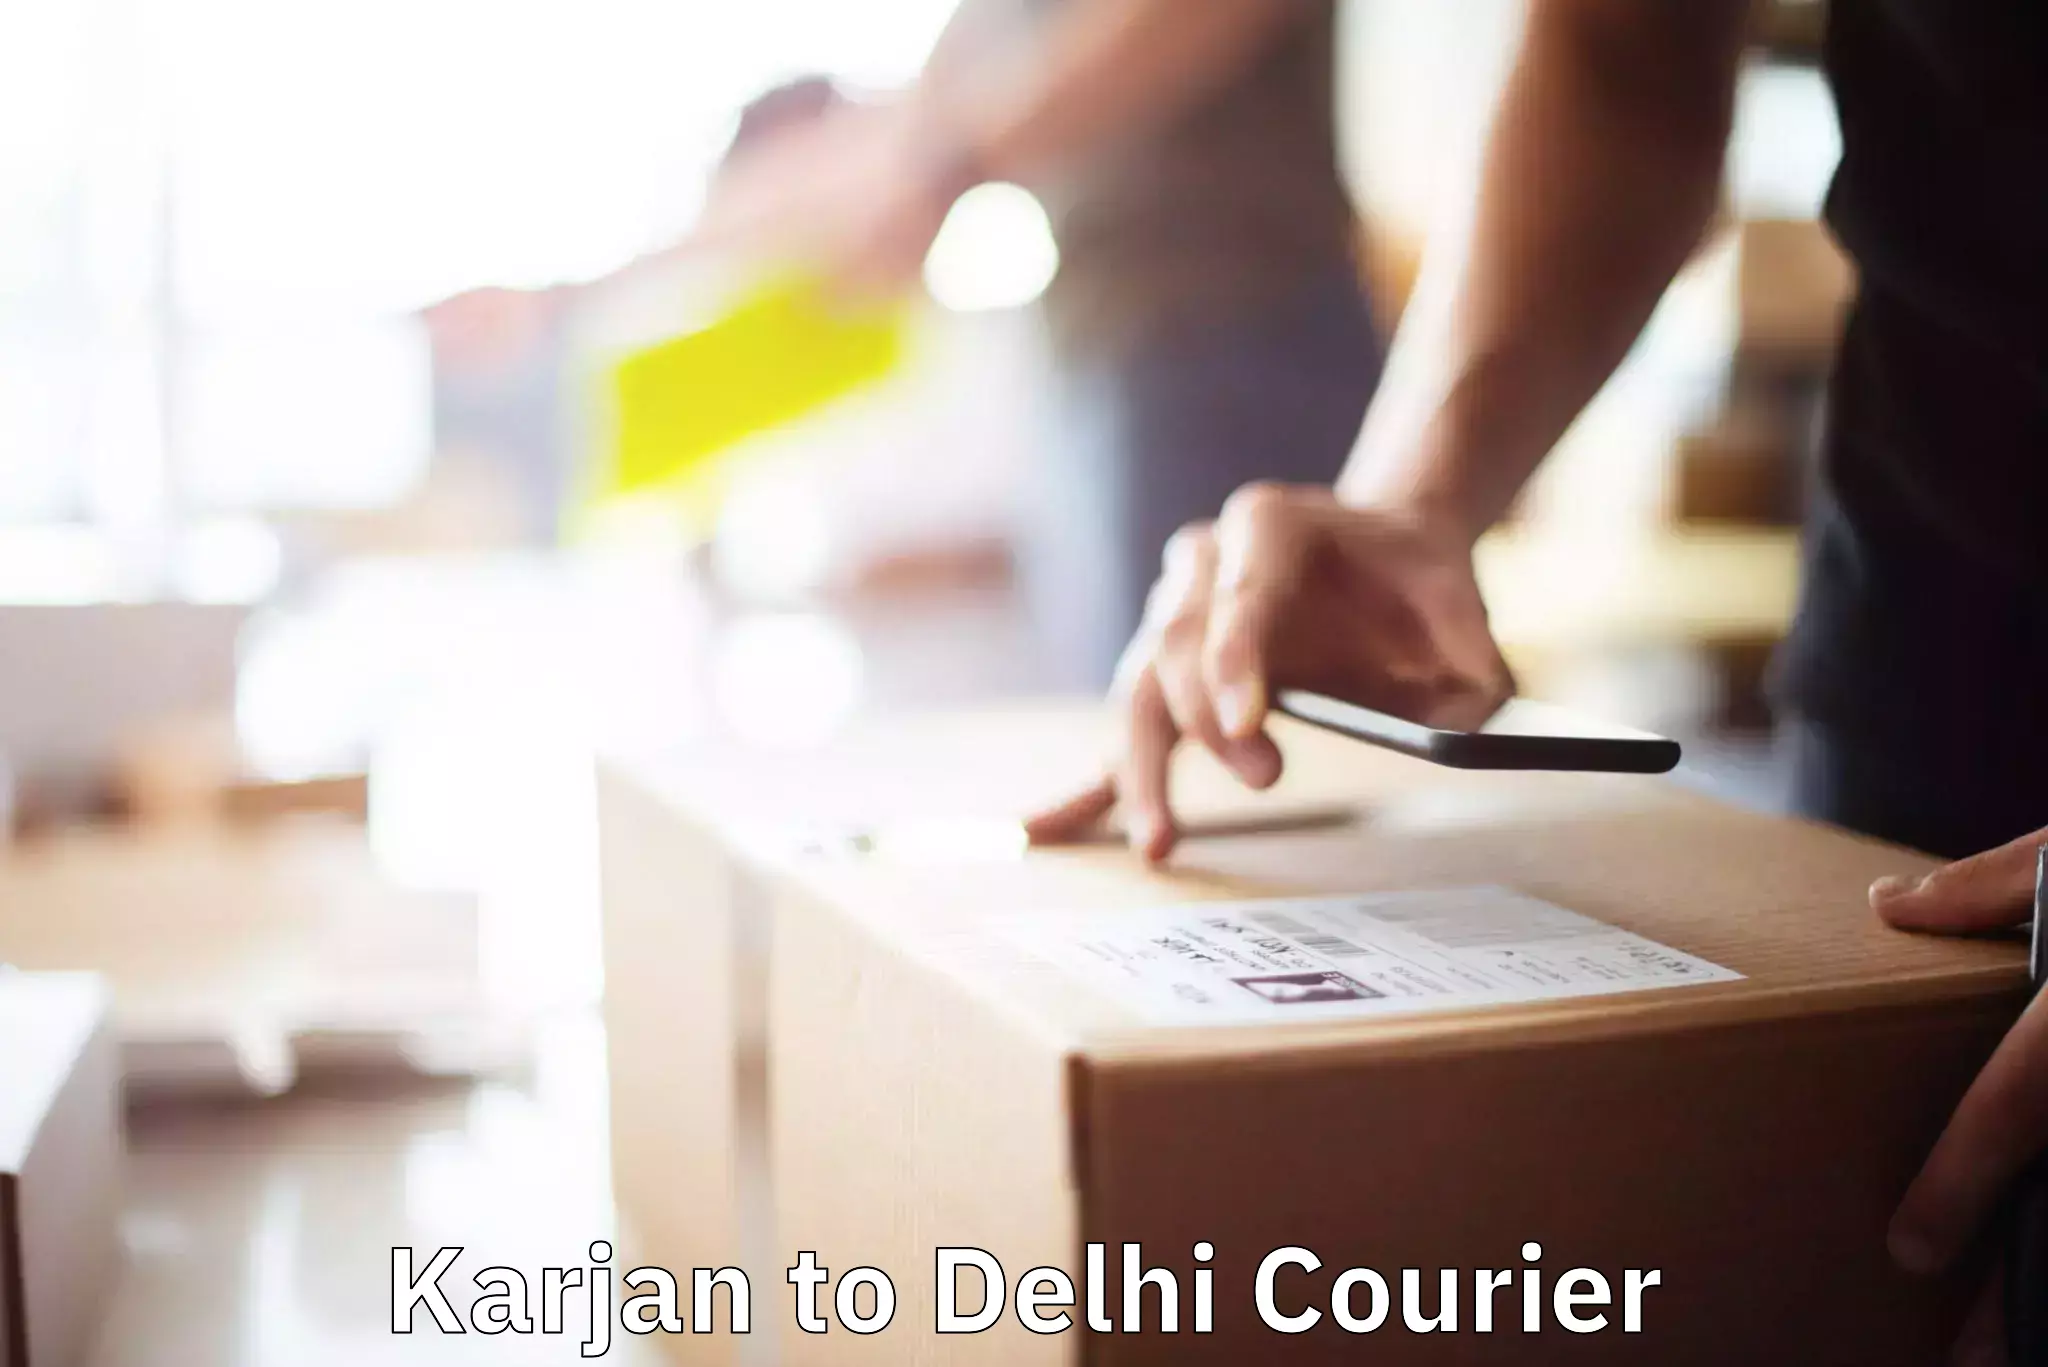 Household transport experts Karjan to Delhi